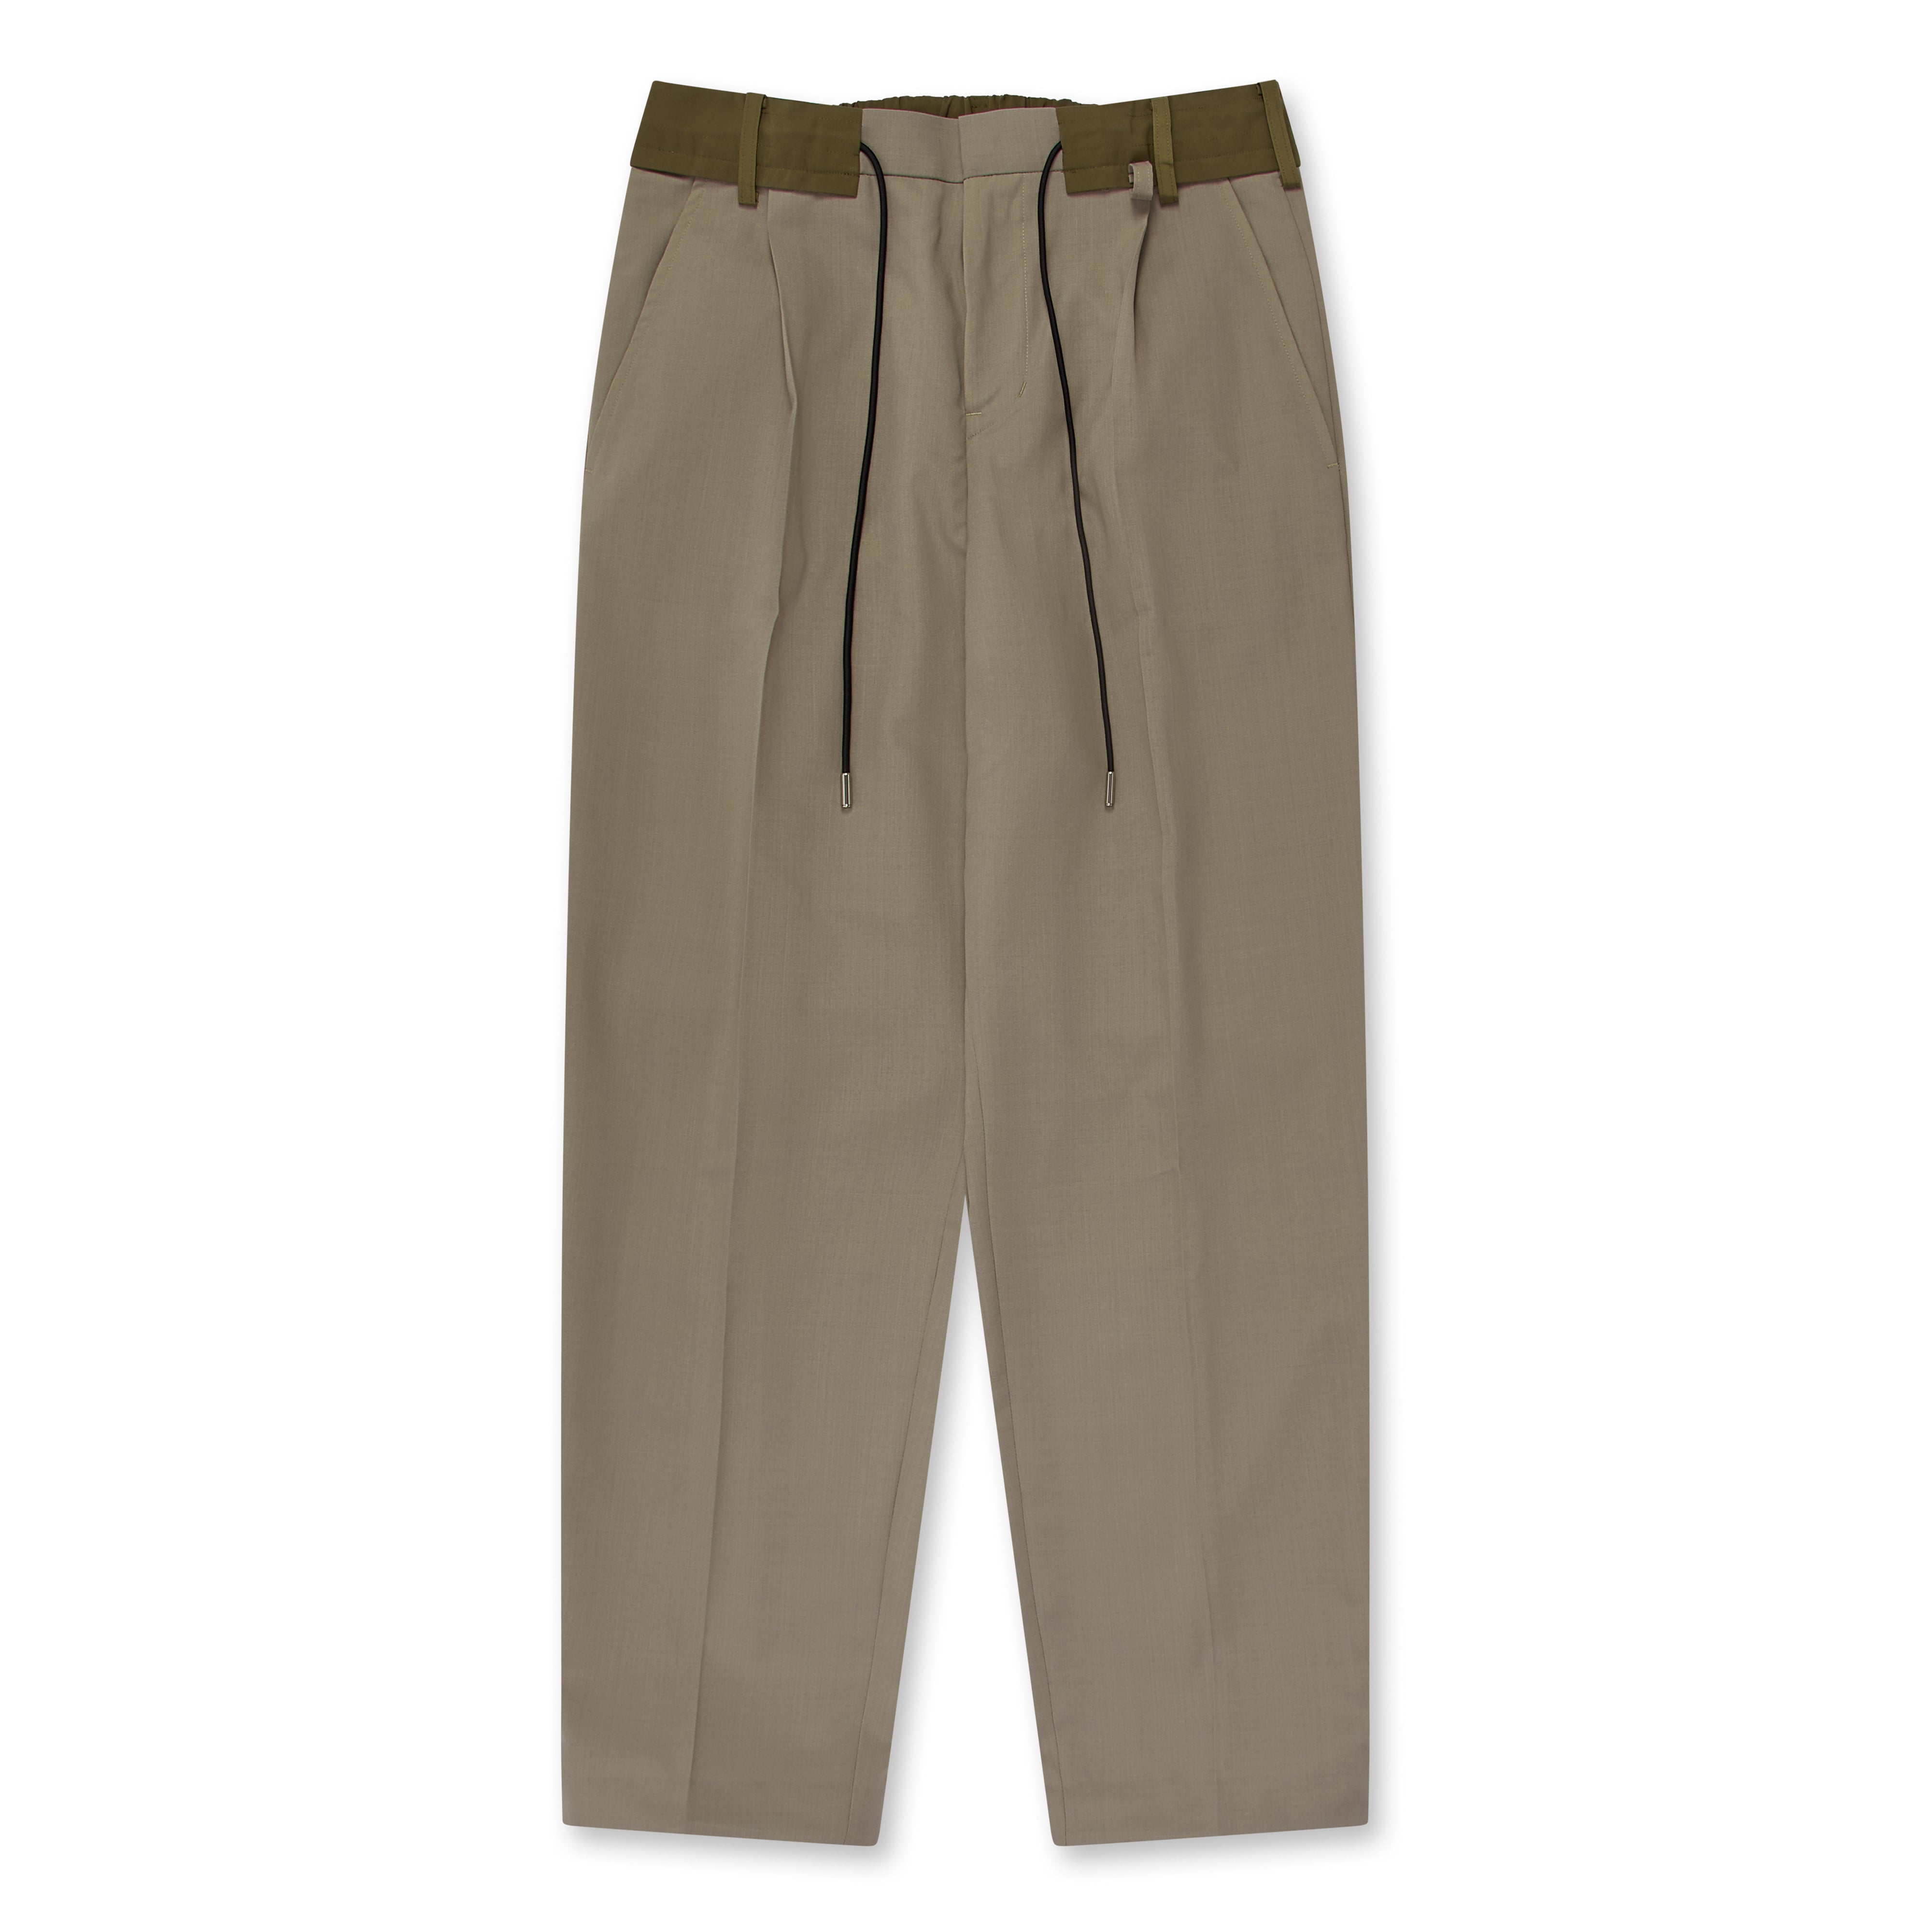 Sacai - Men's Suiting Pants - (Brown)